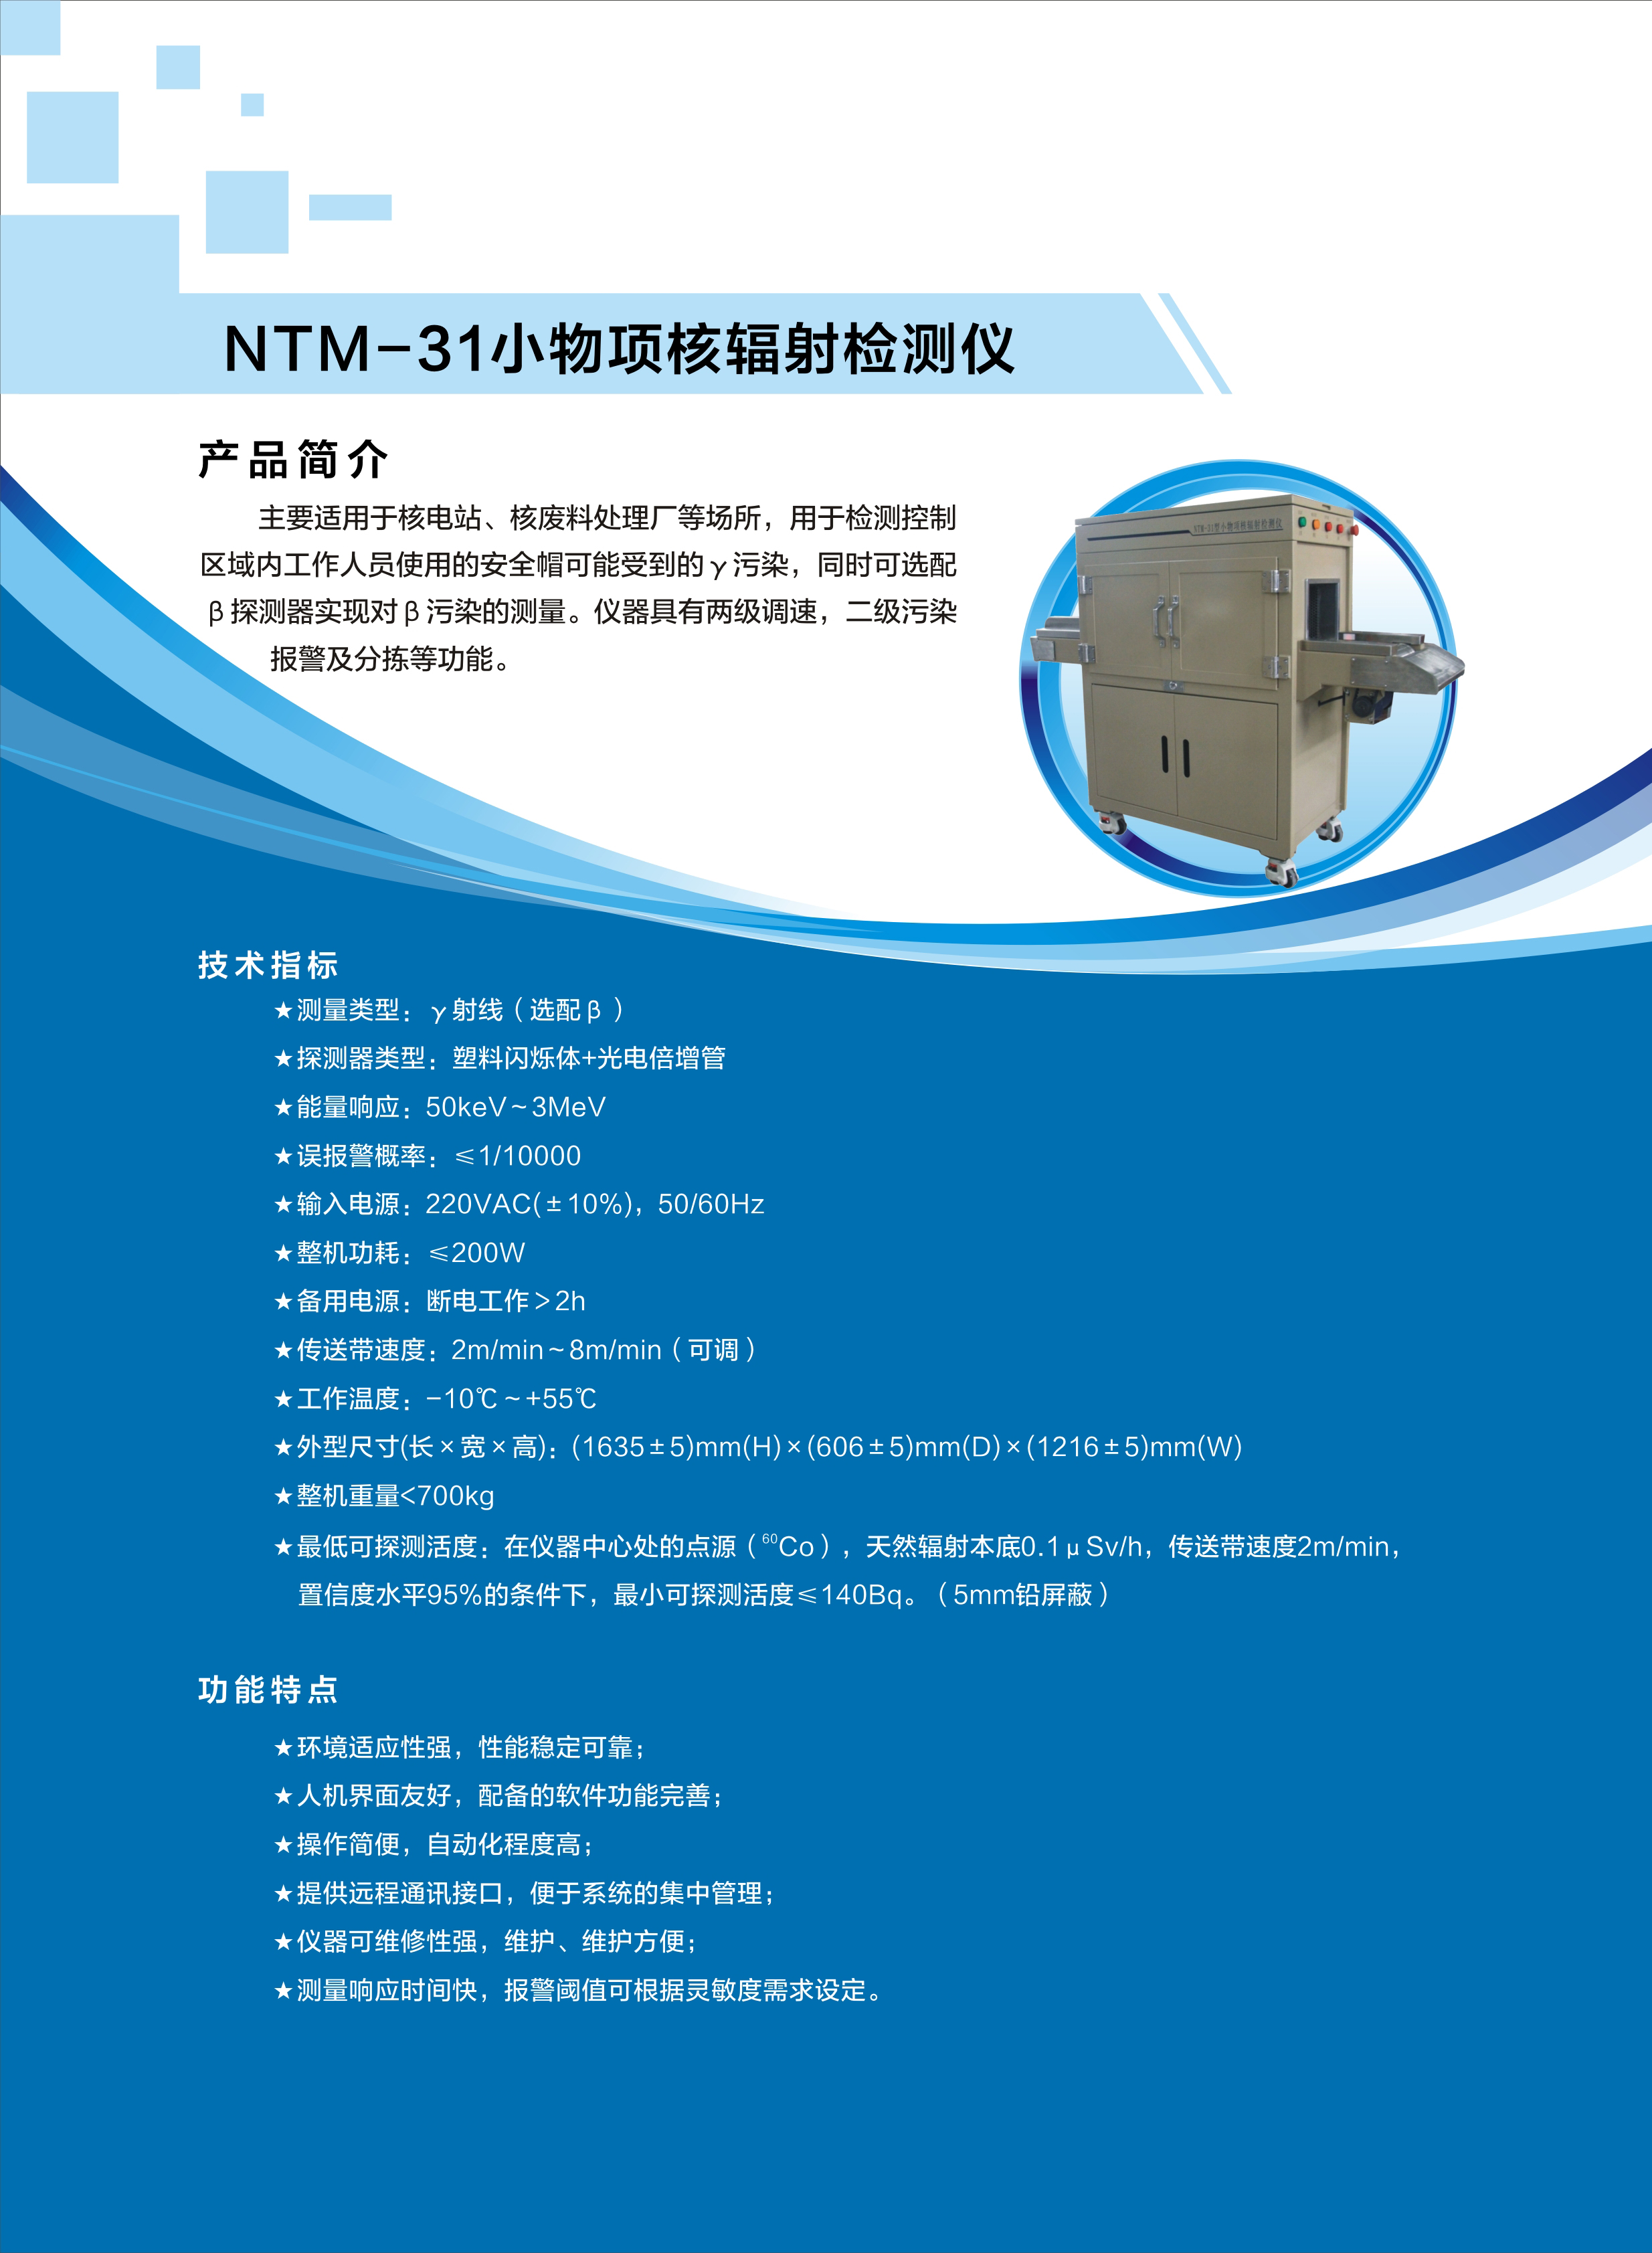 18.NTM-31小物项核辐射检测仪.jpg